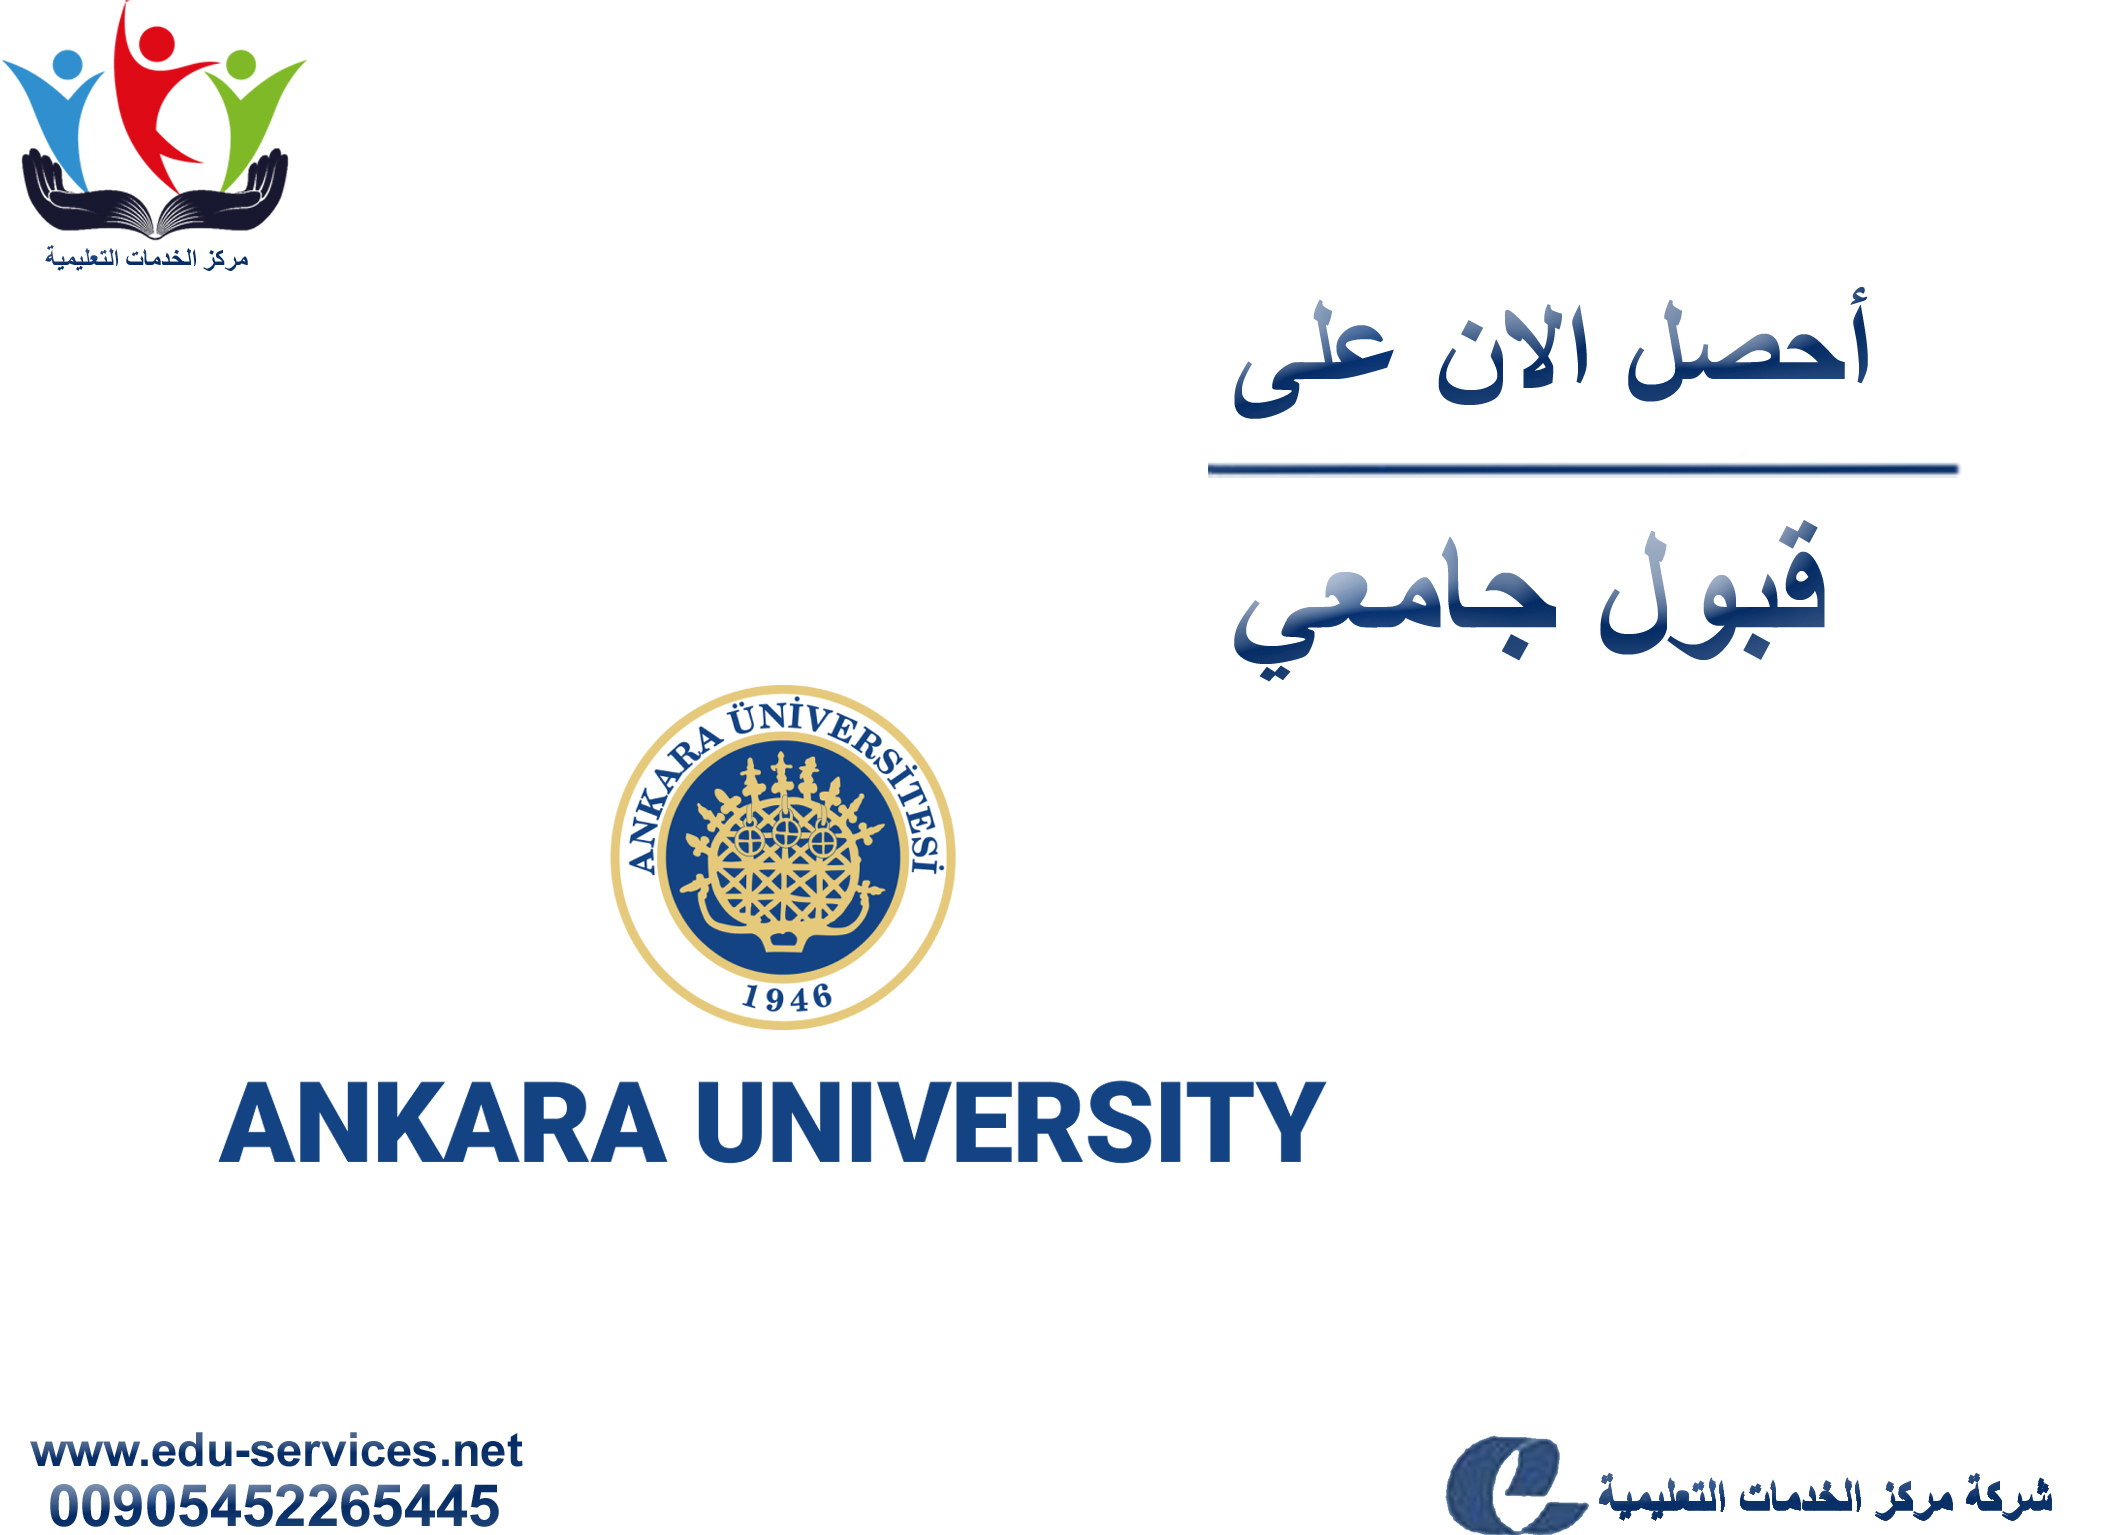 افتتاح التسجيل على جامعة انقرة لبرنامج الدراسات العليا للعام 2019-2020